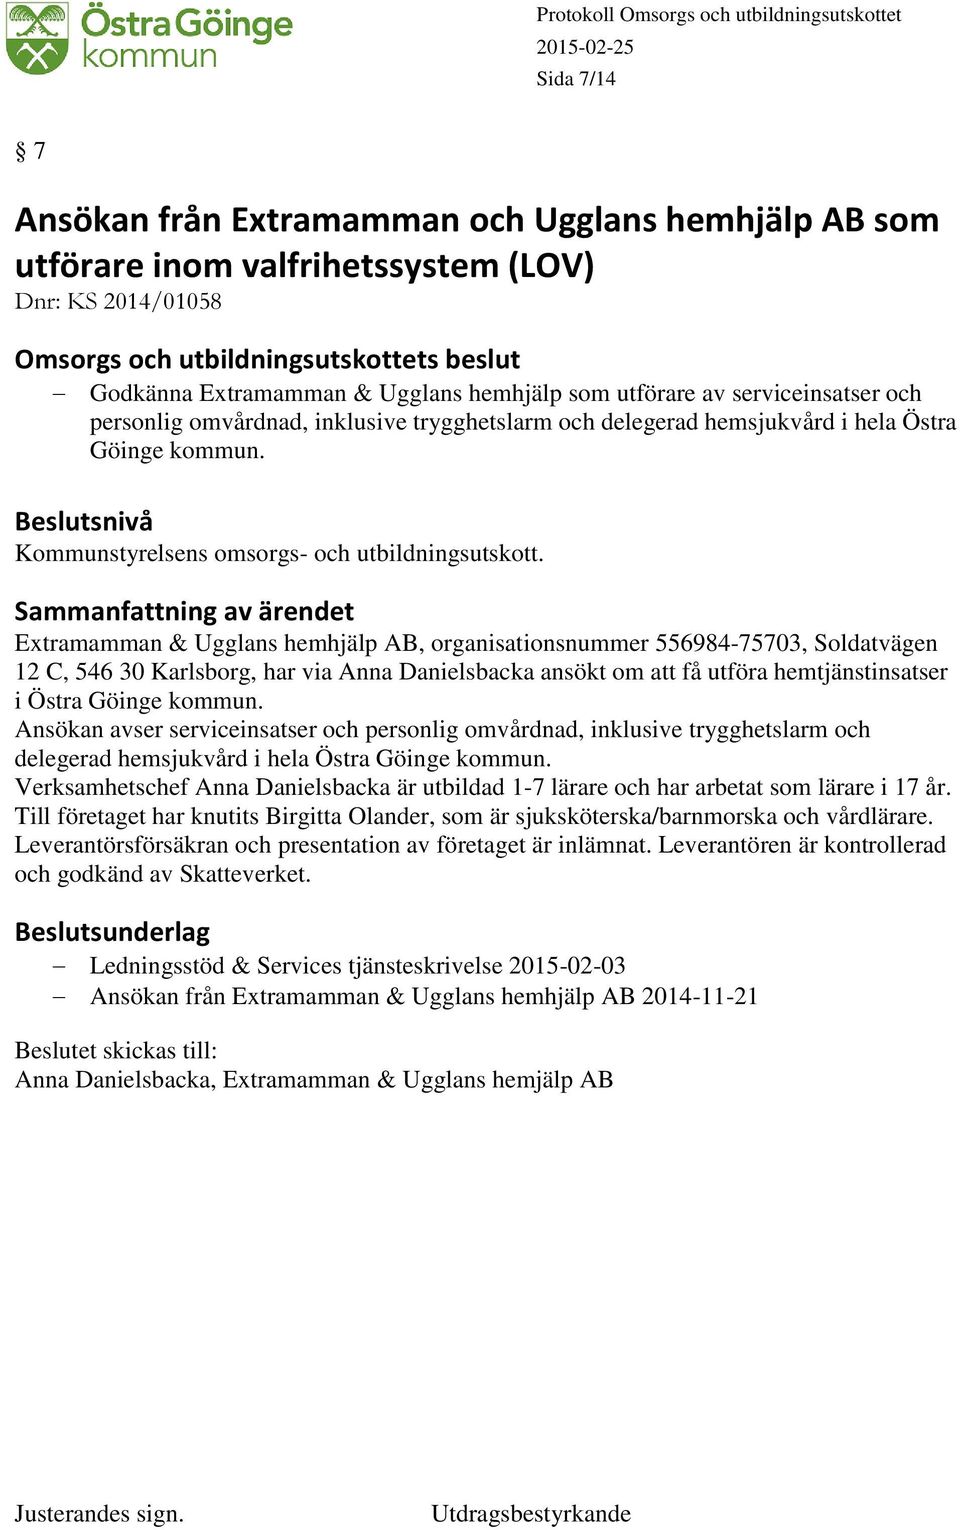 Extramamman & Ugglans hemhjälp AB, organisationsnummer 556984-75703, Soldatvägen 12 C, 546 30 Karlsborg, har via Anna Danielsbacka ansökt om att få utföra hemtjänstinsatser i Östra Göinge kommun.